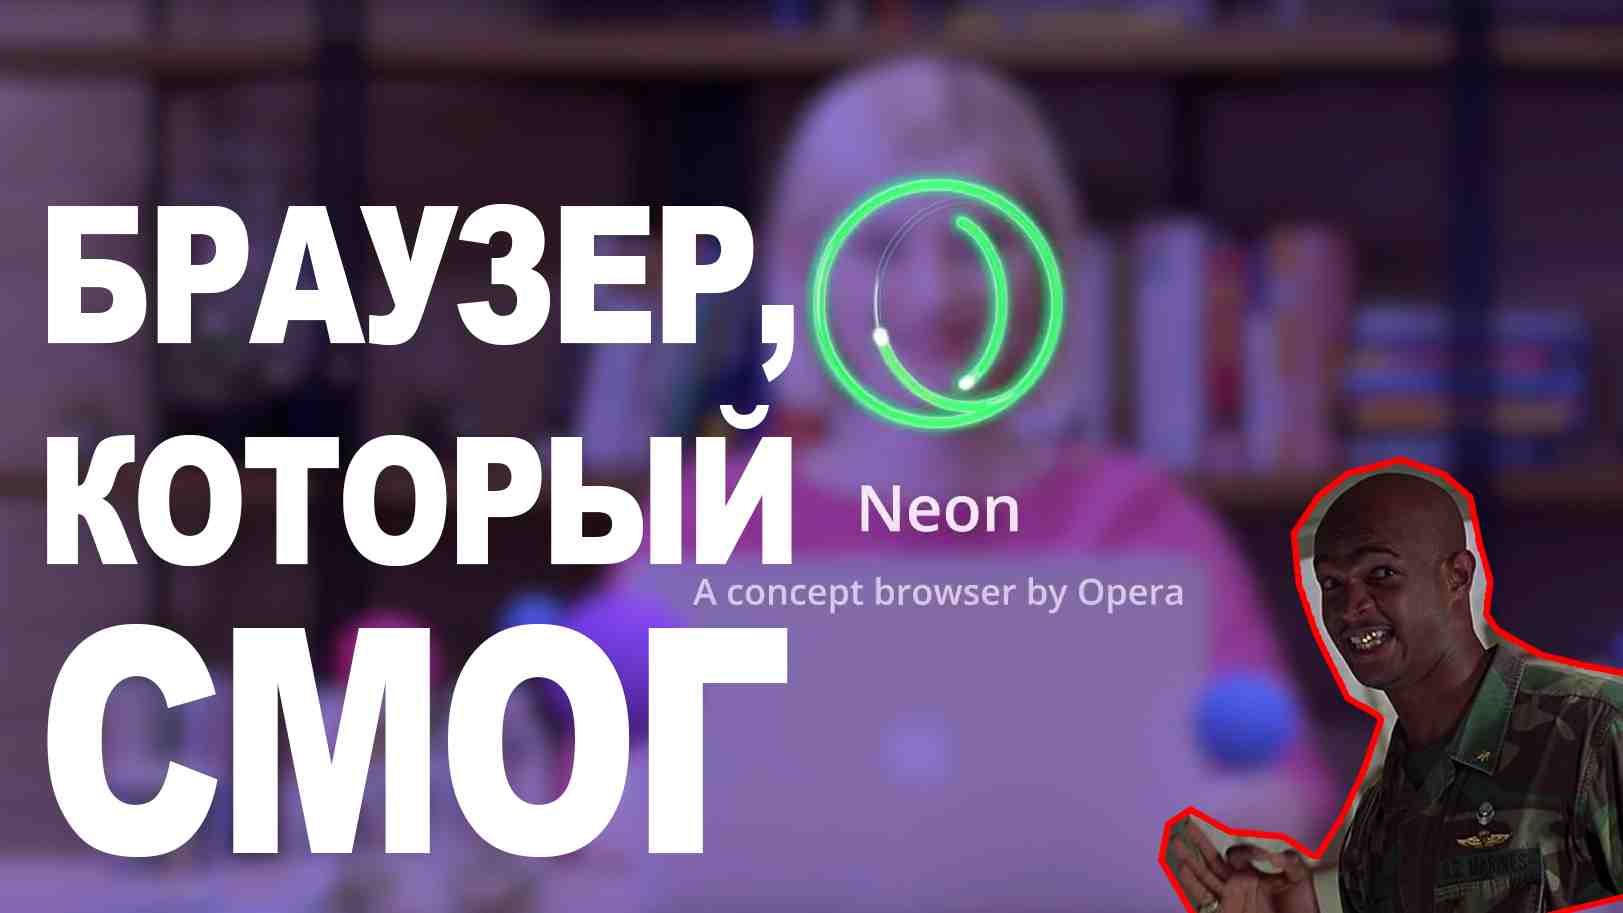 Opera Neon – они смогли совместить приятный дизайн, минимализм и большое количество полезных фишек в одном браузере